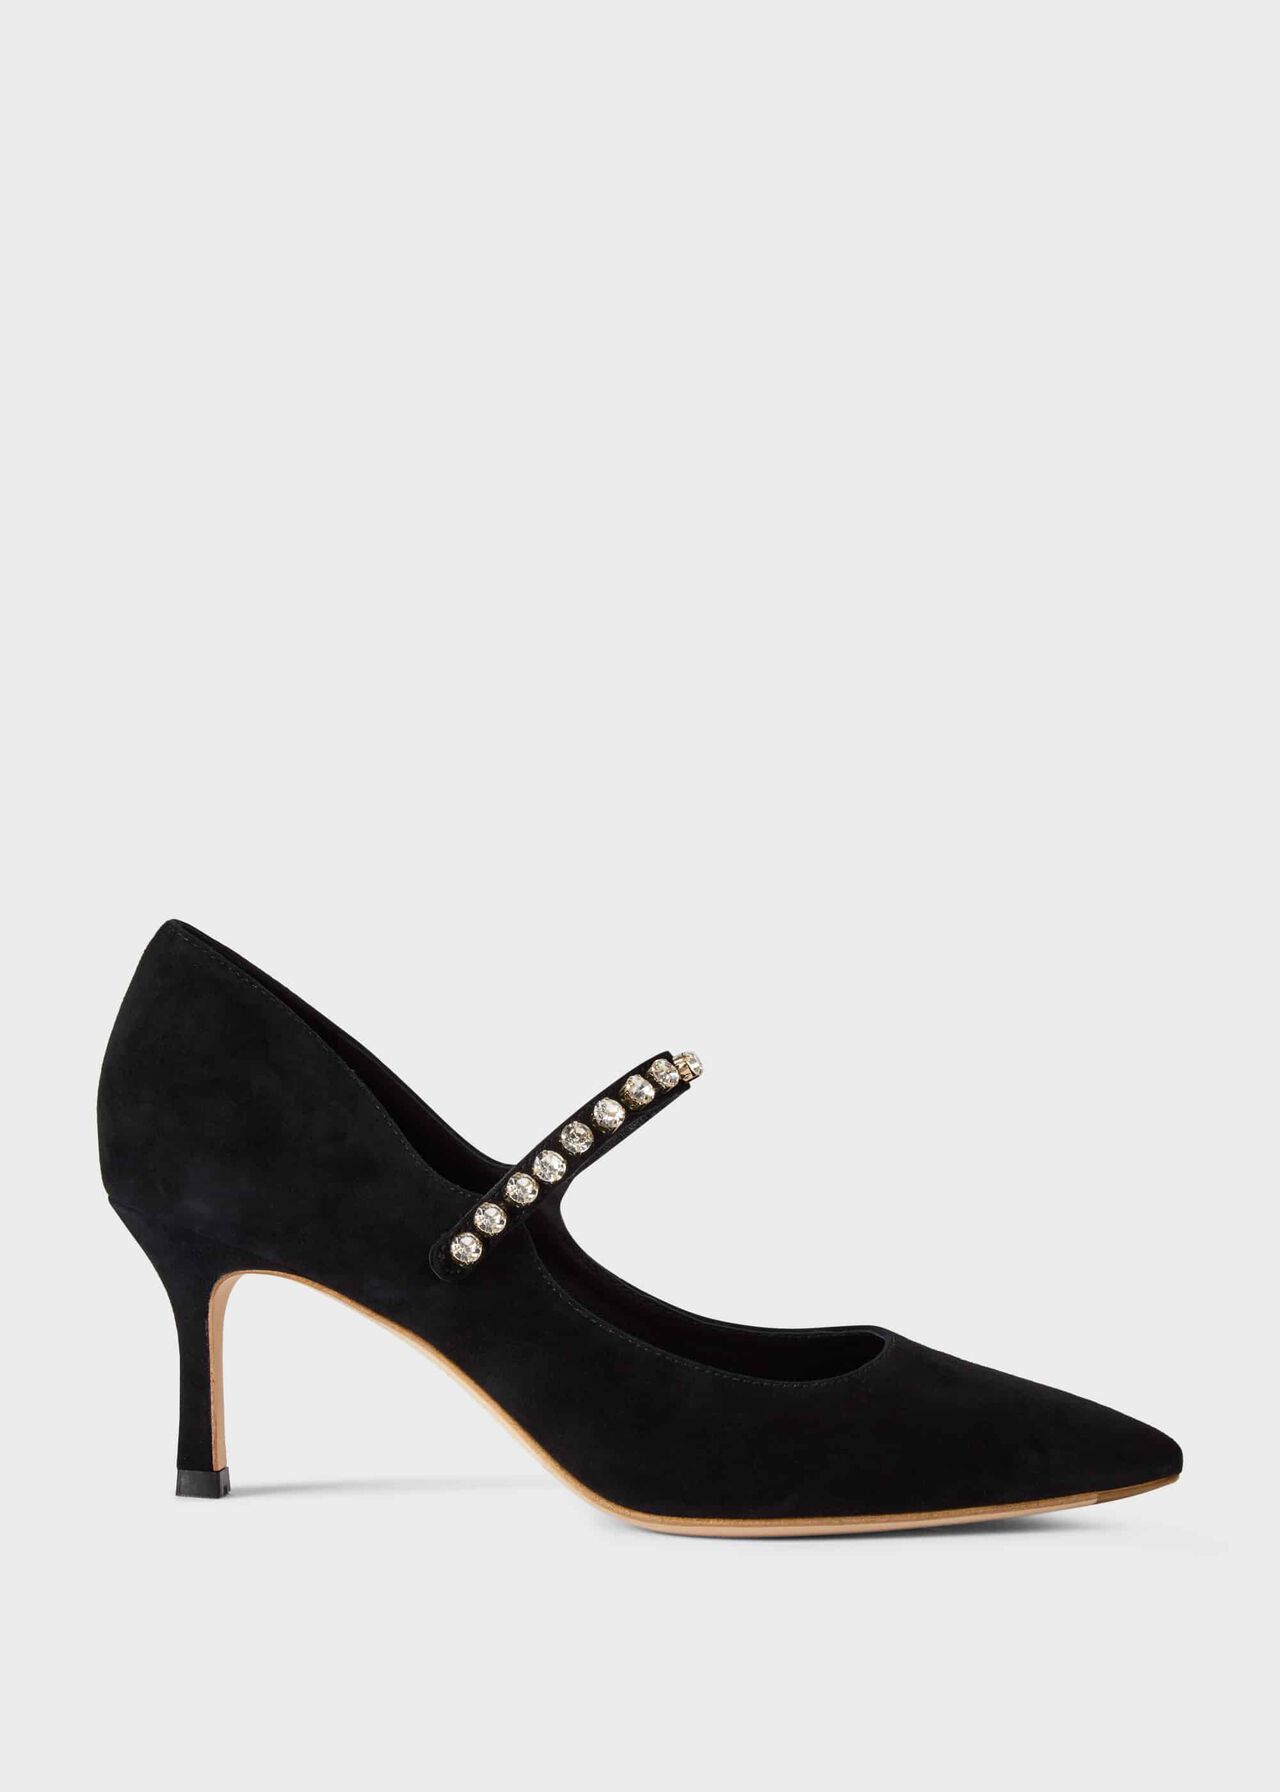 Harper Suede Stiletto Court Shoes, Black, hi-res